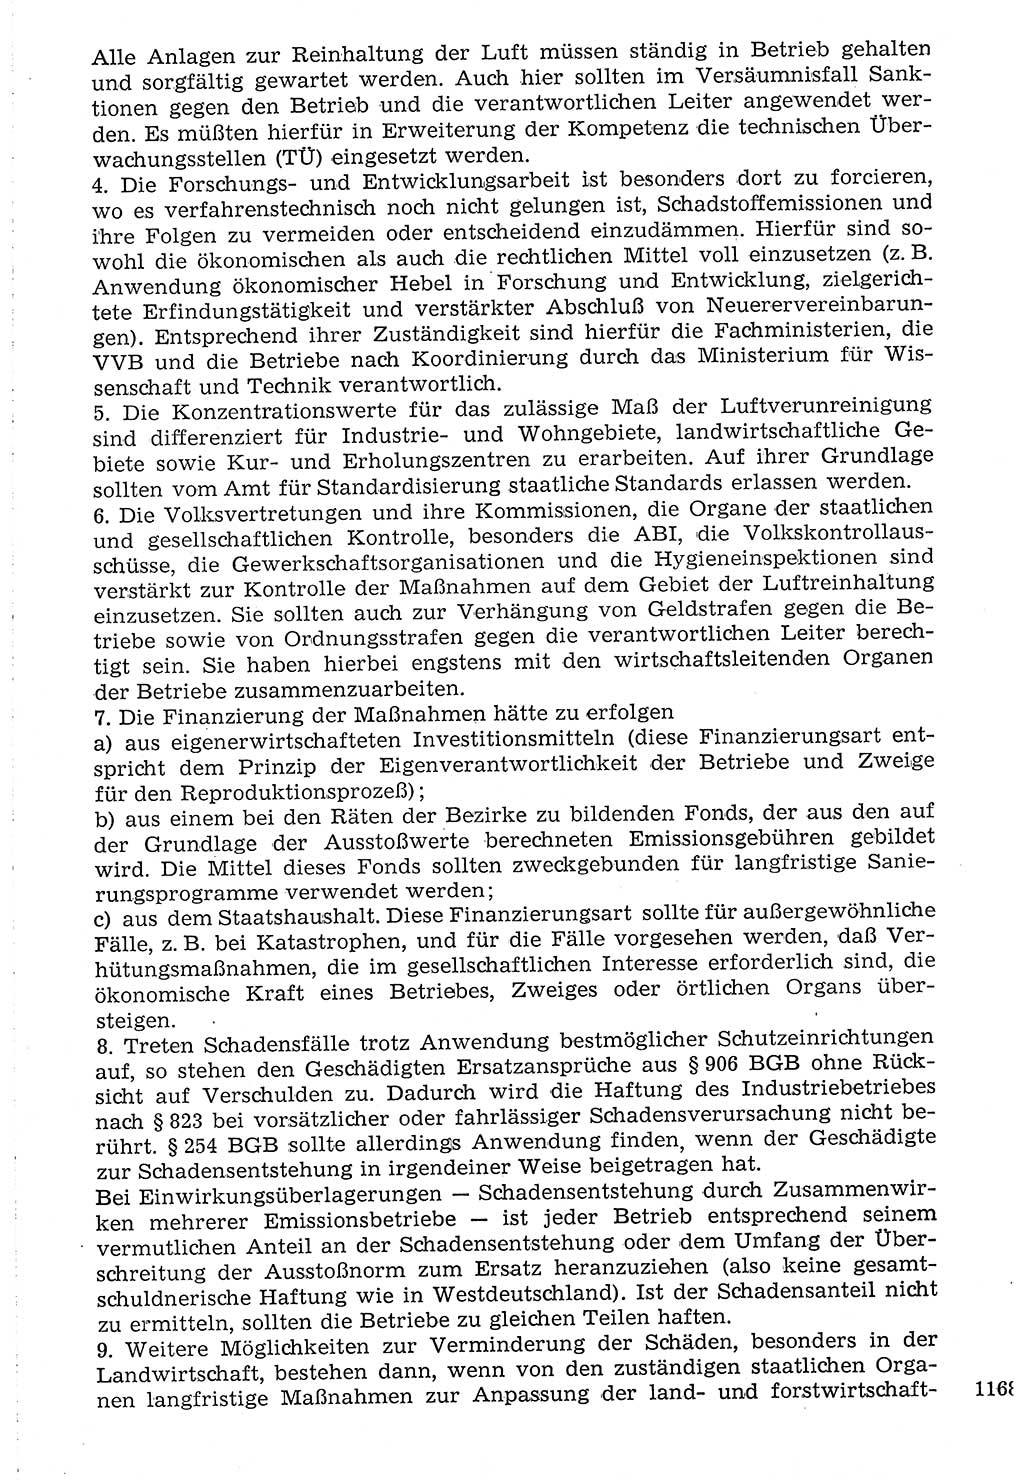 Staat und Recht (StuR), 17. Jahrgang [Deutsche Demokratische Republik (DDR)] 1968, Seite 1168 (StuR DDR 1968, S. 1168)